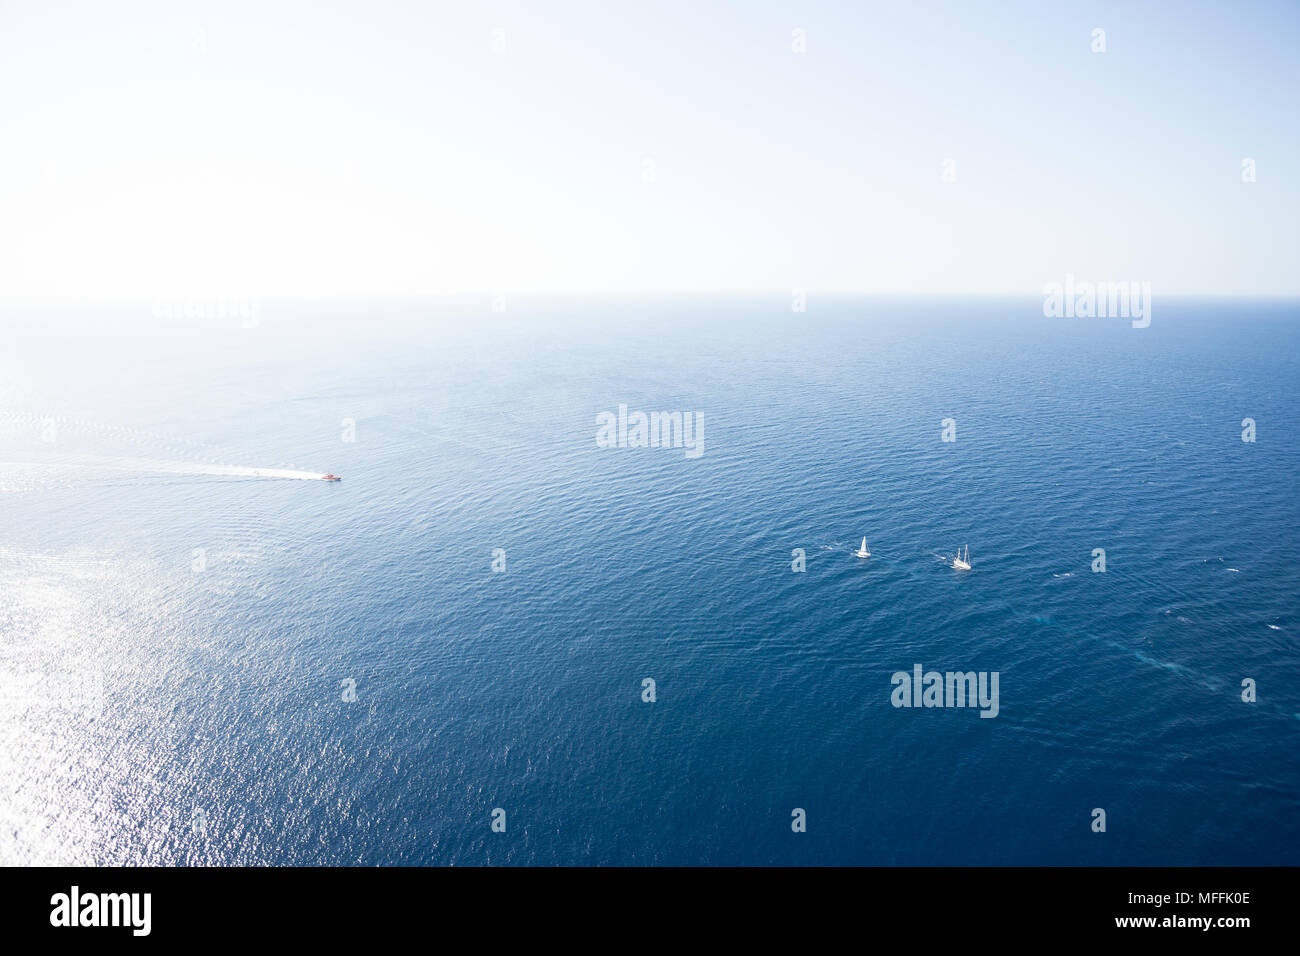 Cap de Formentor, Mallorca, Spain - Farsightedness across the Mediterranean Sea onto some boats Stock Photo